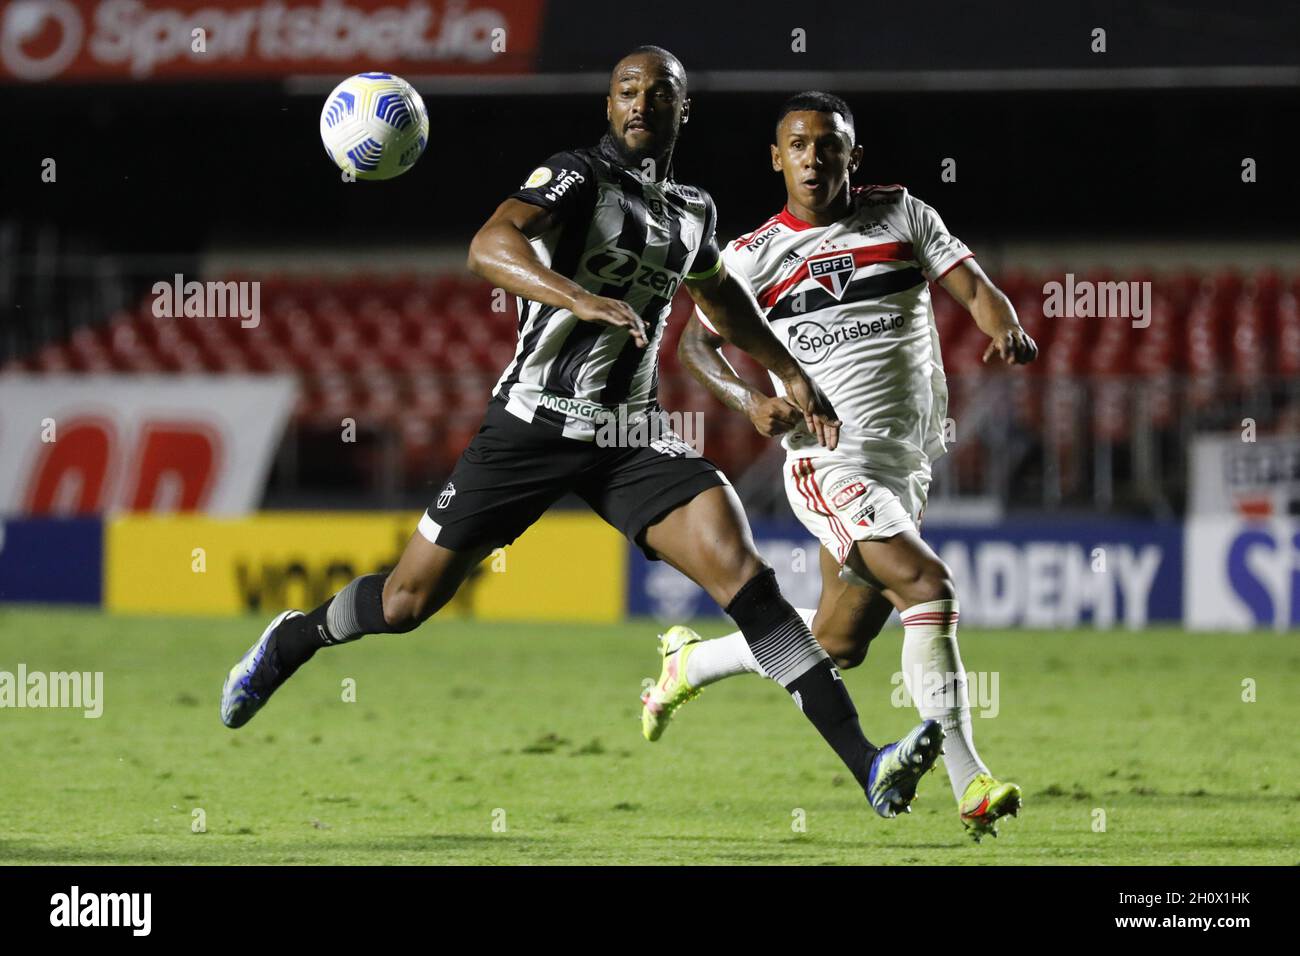 Luiz Otavio während des Fußballspiels Campeonato Brasileiro zwischen Sao Paulo und Ceara im Morumbi-Stadion in Sao Paulo, SP, Quelle: SPP Sport Press Foto. /Alamy Live News Stockfoto